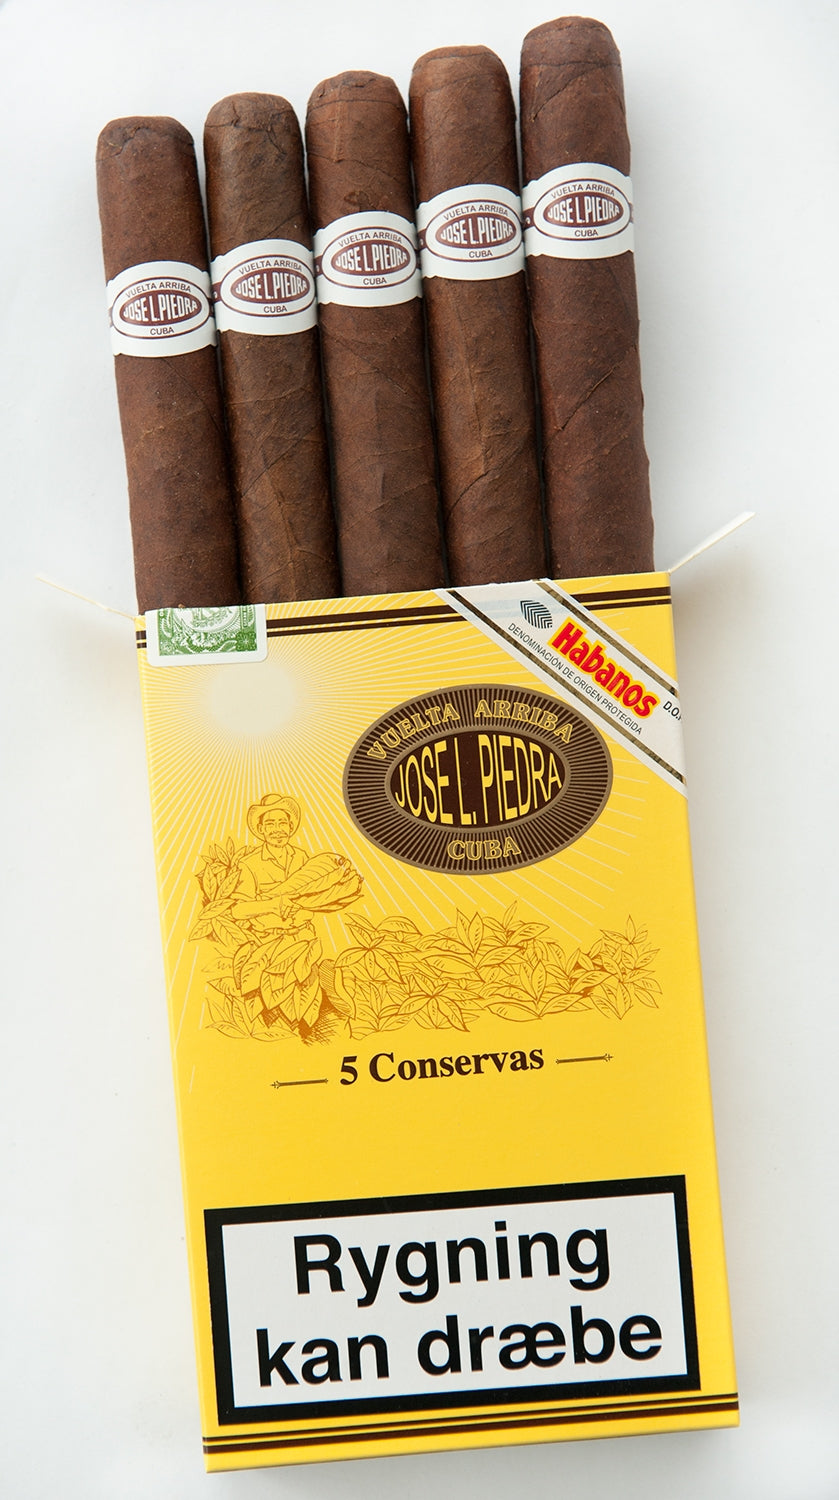 Jose L. Piedra Conservas Zigarre im Conservas Format 5er Schachtel offen